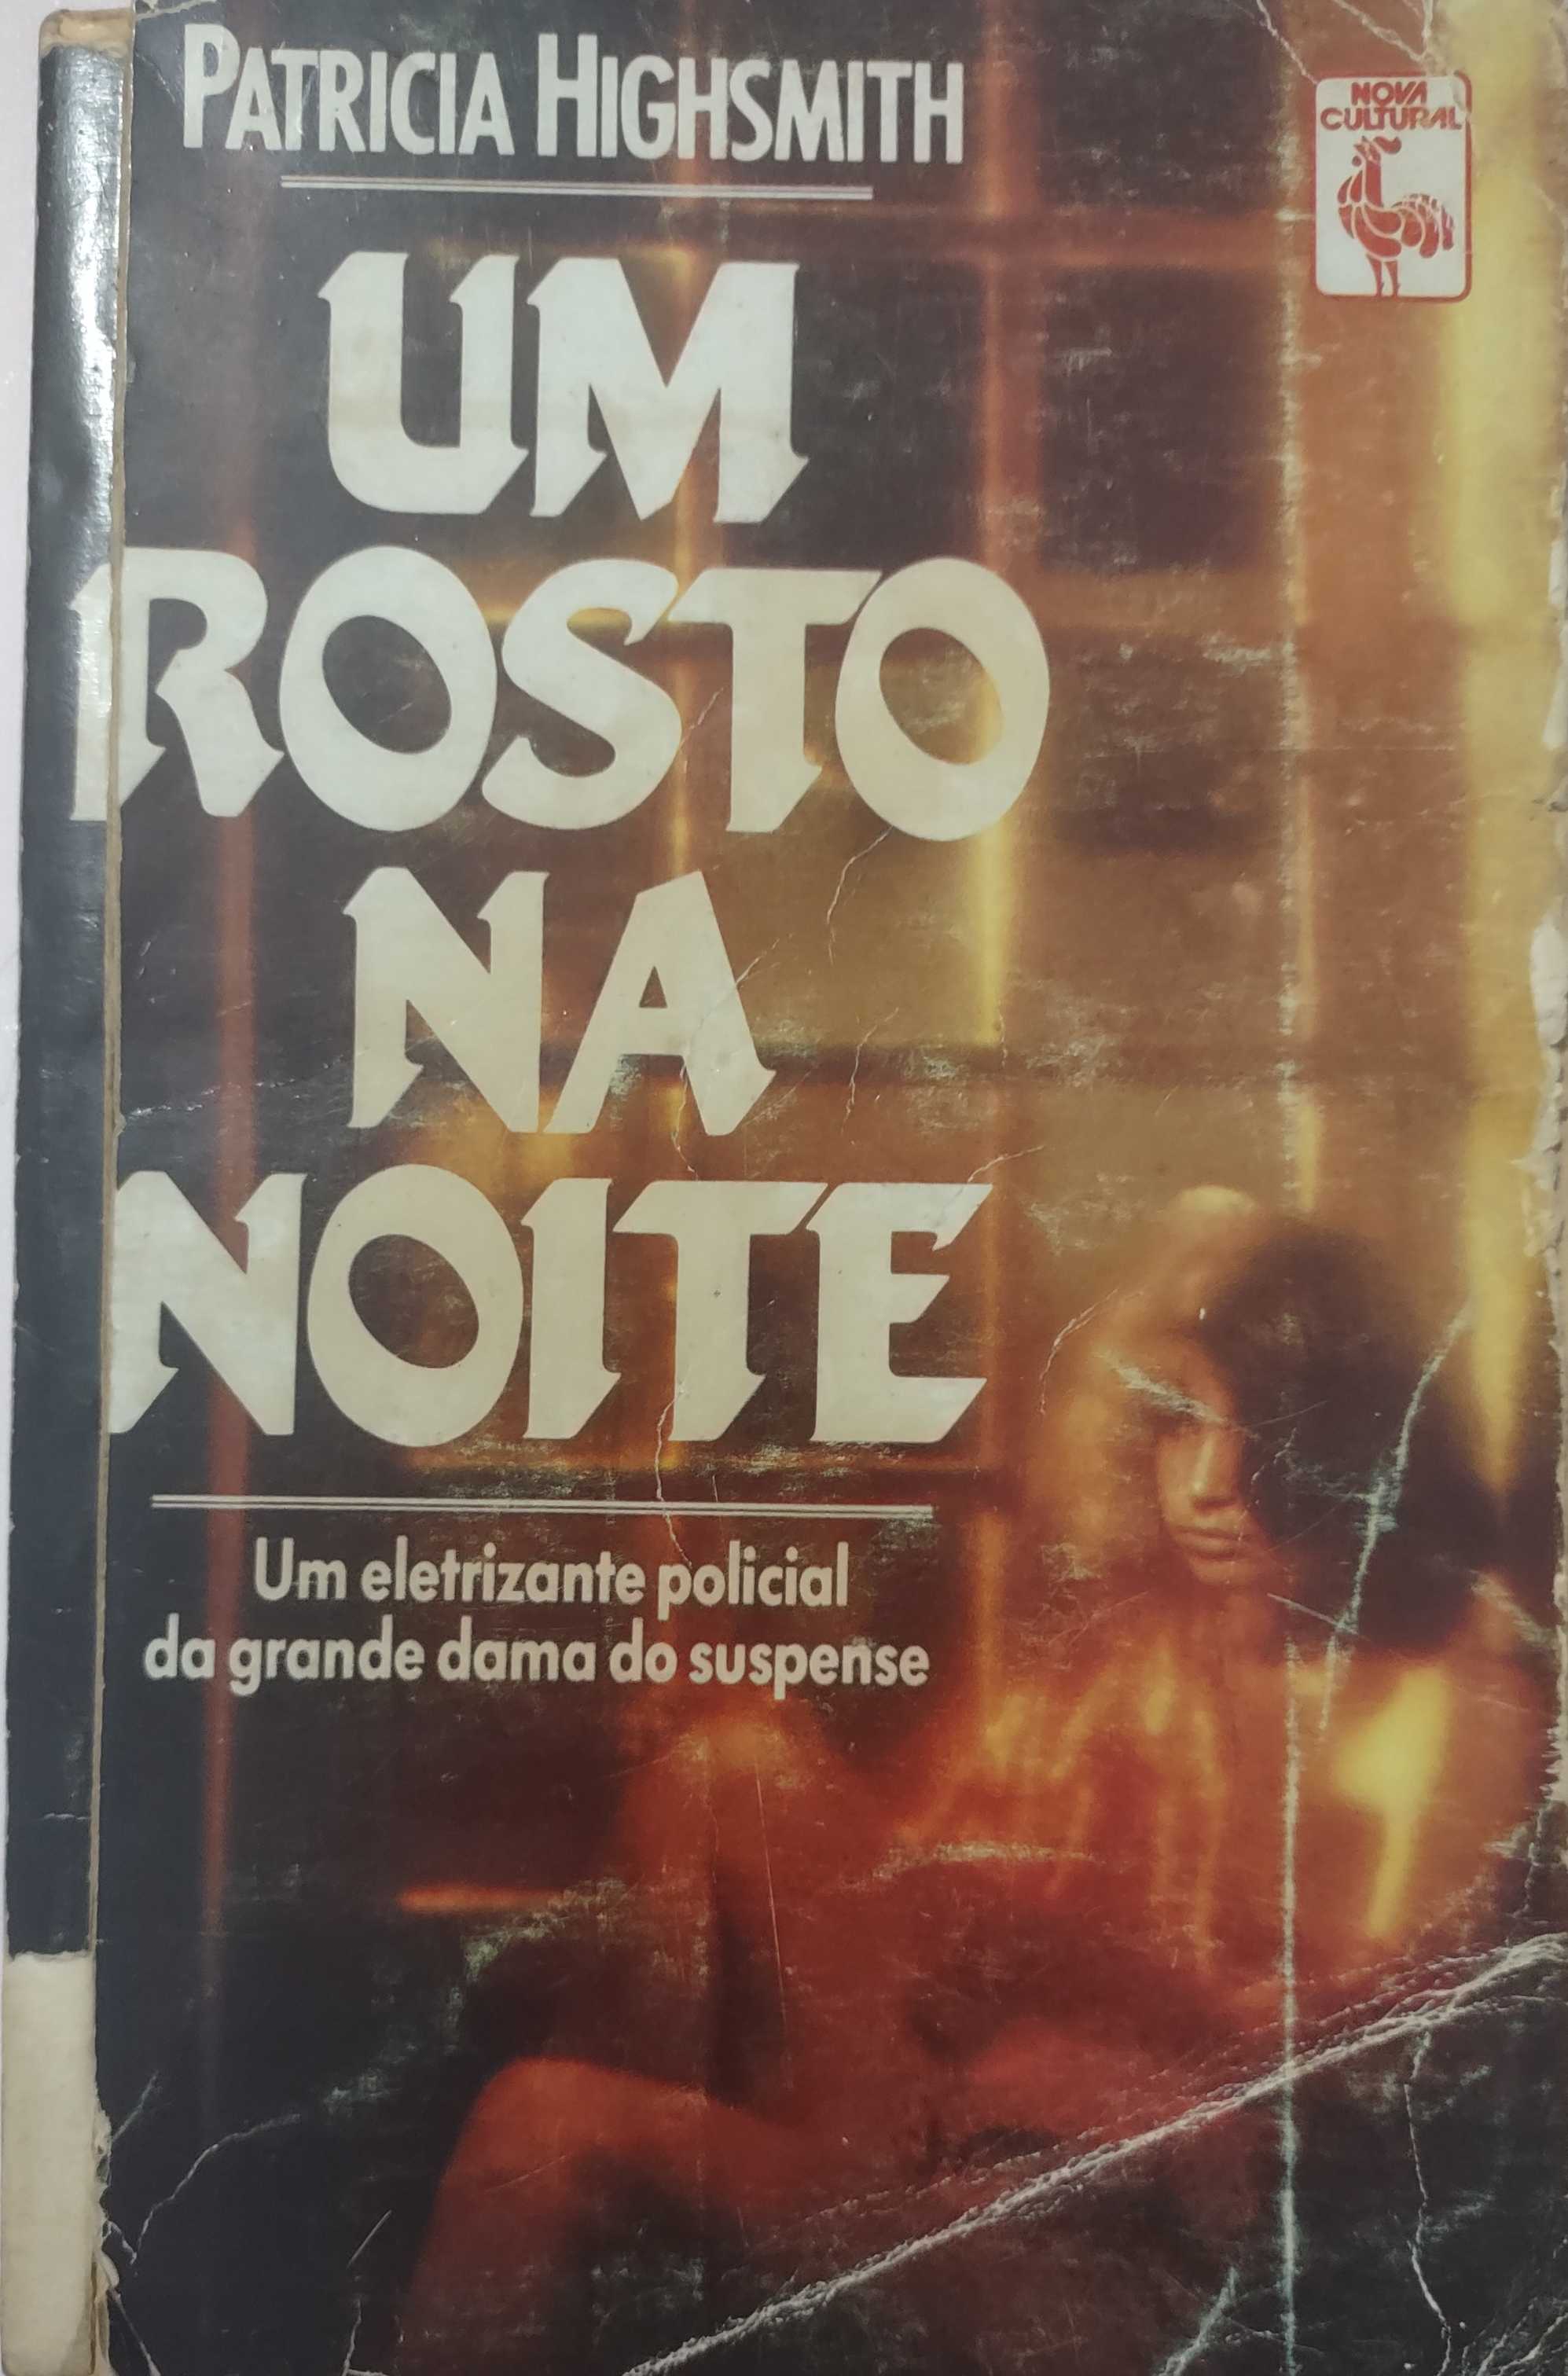 Patricia Highsmith, Lila Spinelli (tradução): Um Rosto na noite (Paperback, português language, 1989, Nova Cultural)